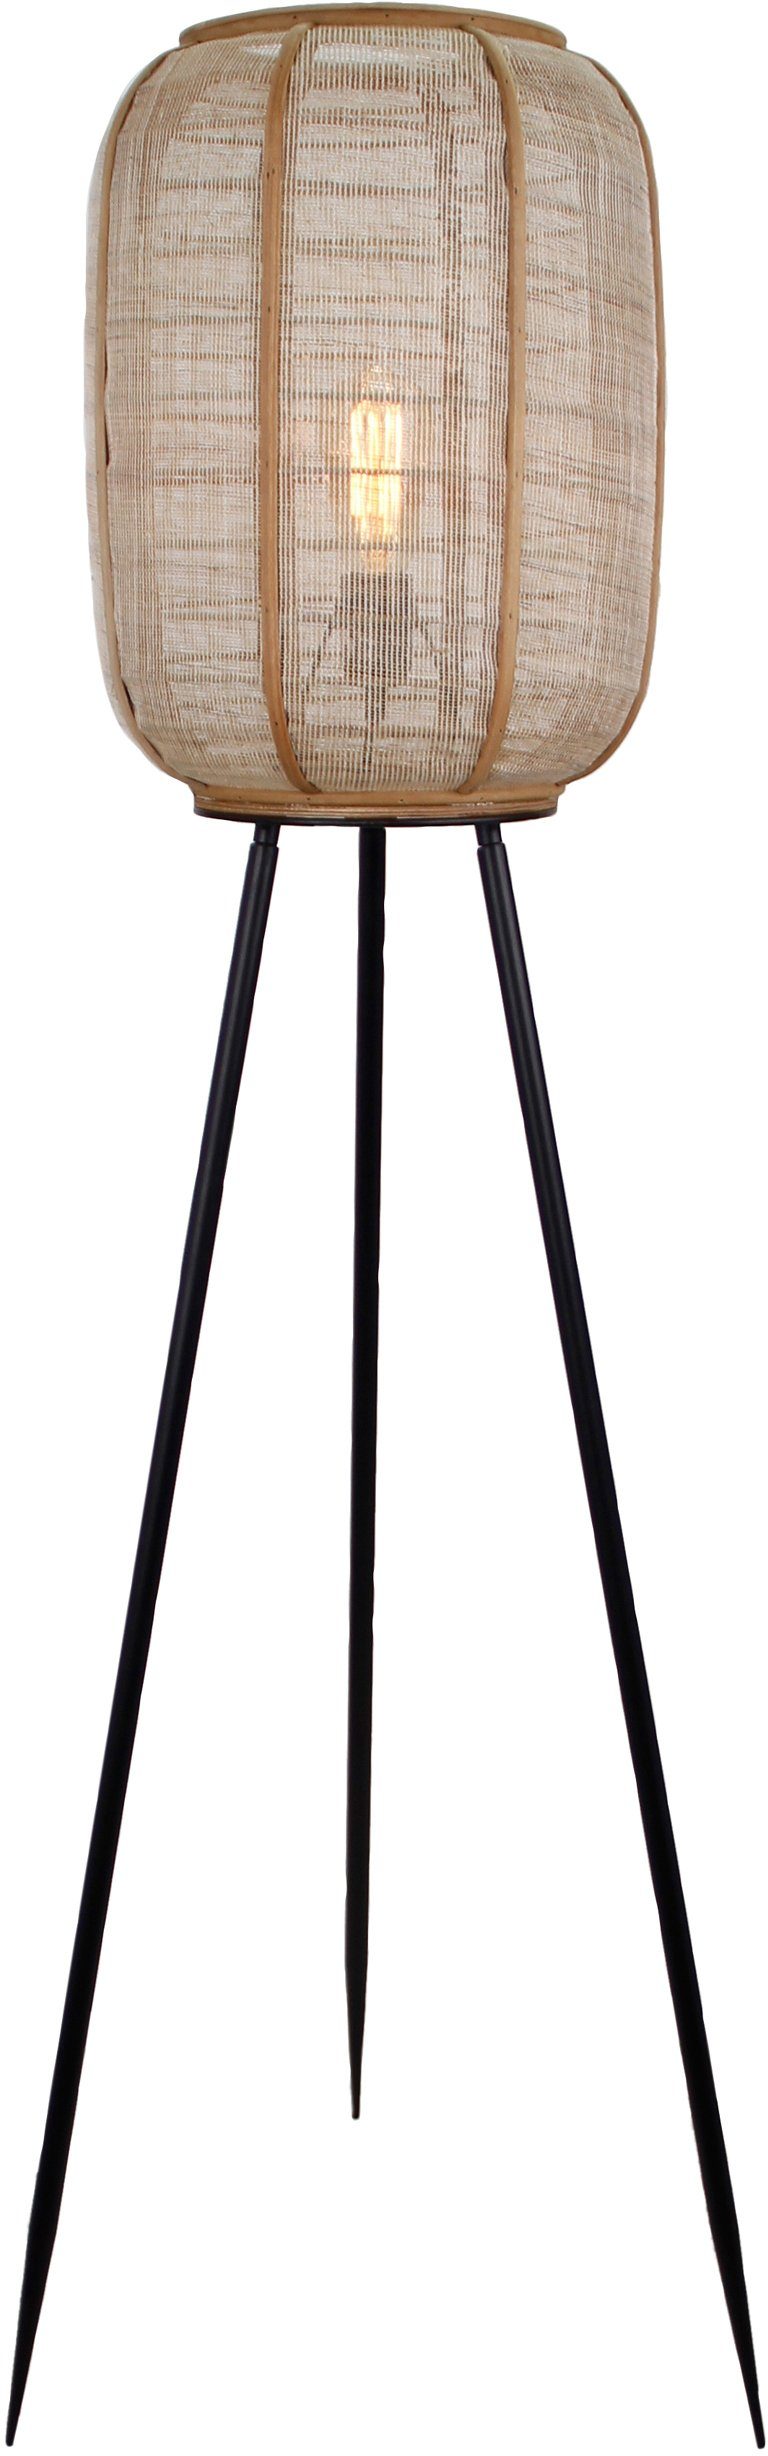 Home affaire Stehlampe Rouez, ohne Leuchtmittel, dreibeinige Standleuchte mit 1,34m Höhe, Schirm aus Textil und Holz | Standleuchten